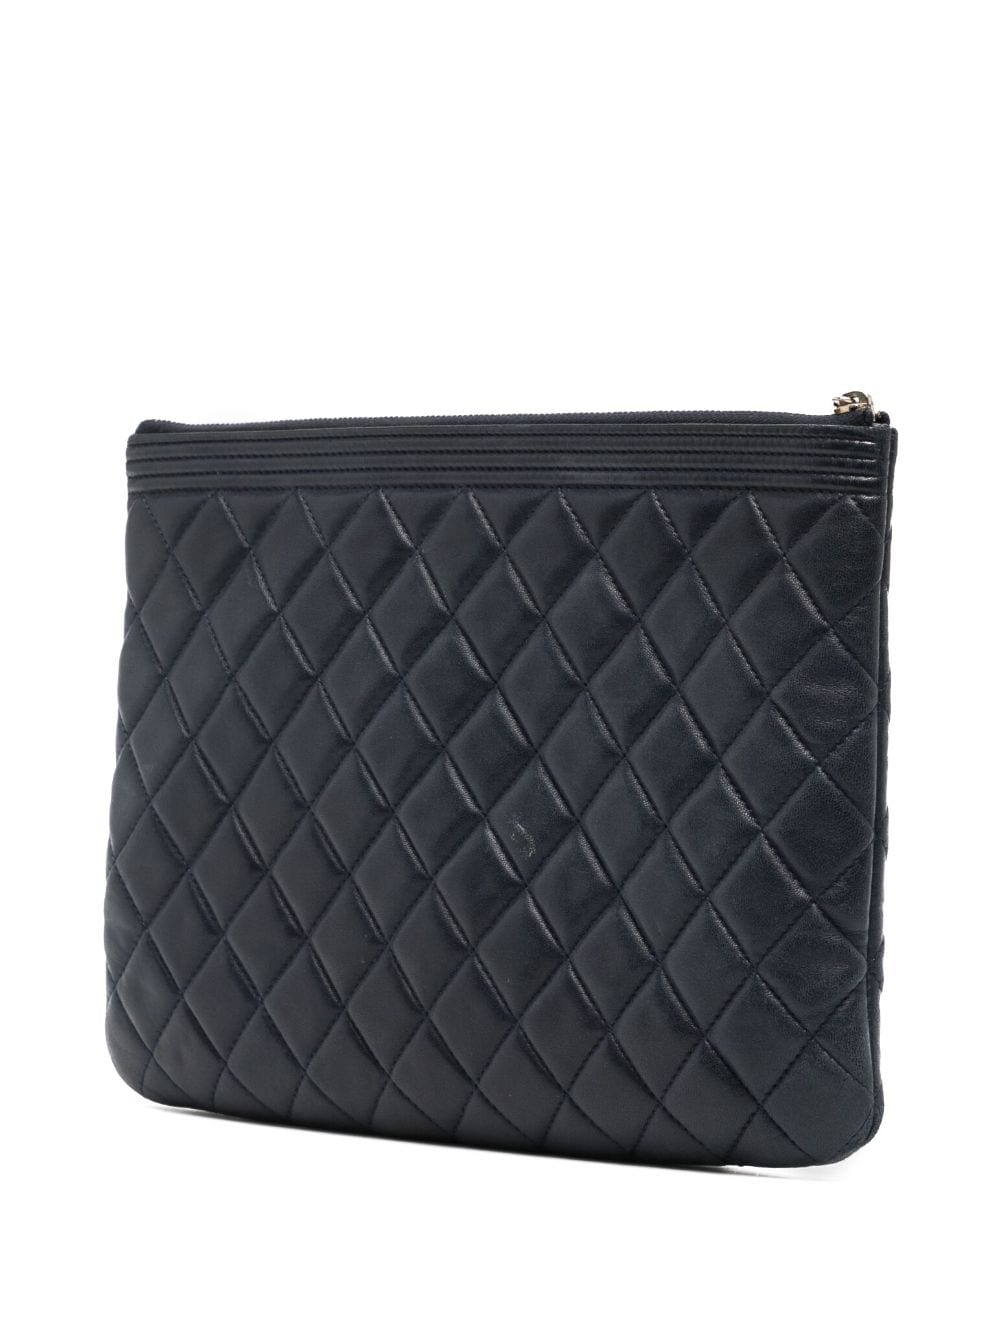 Chanel Black Caviar Leather O Case Clutch Bag Chanel